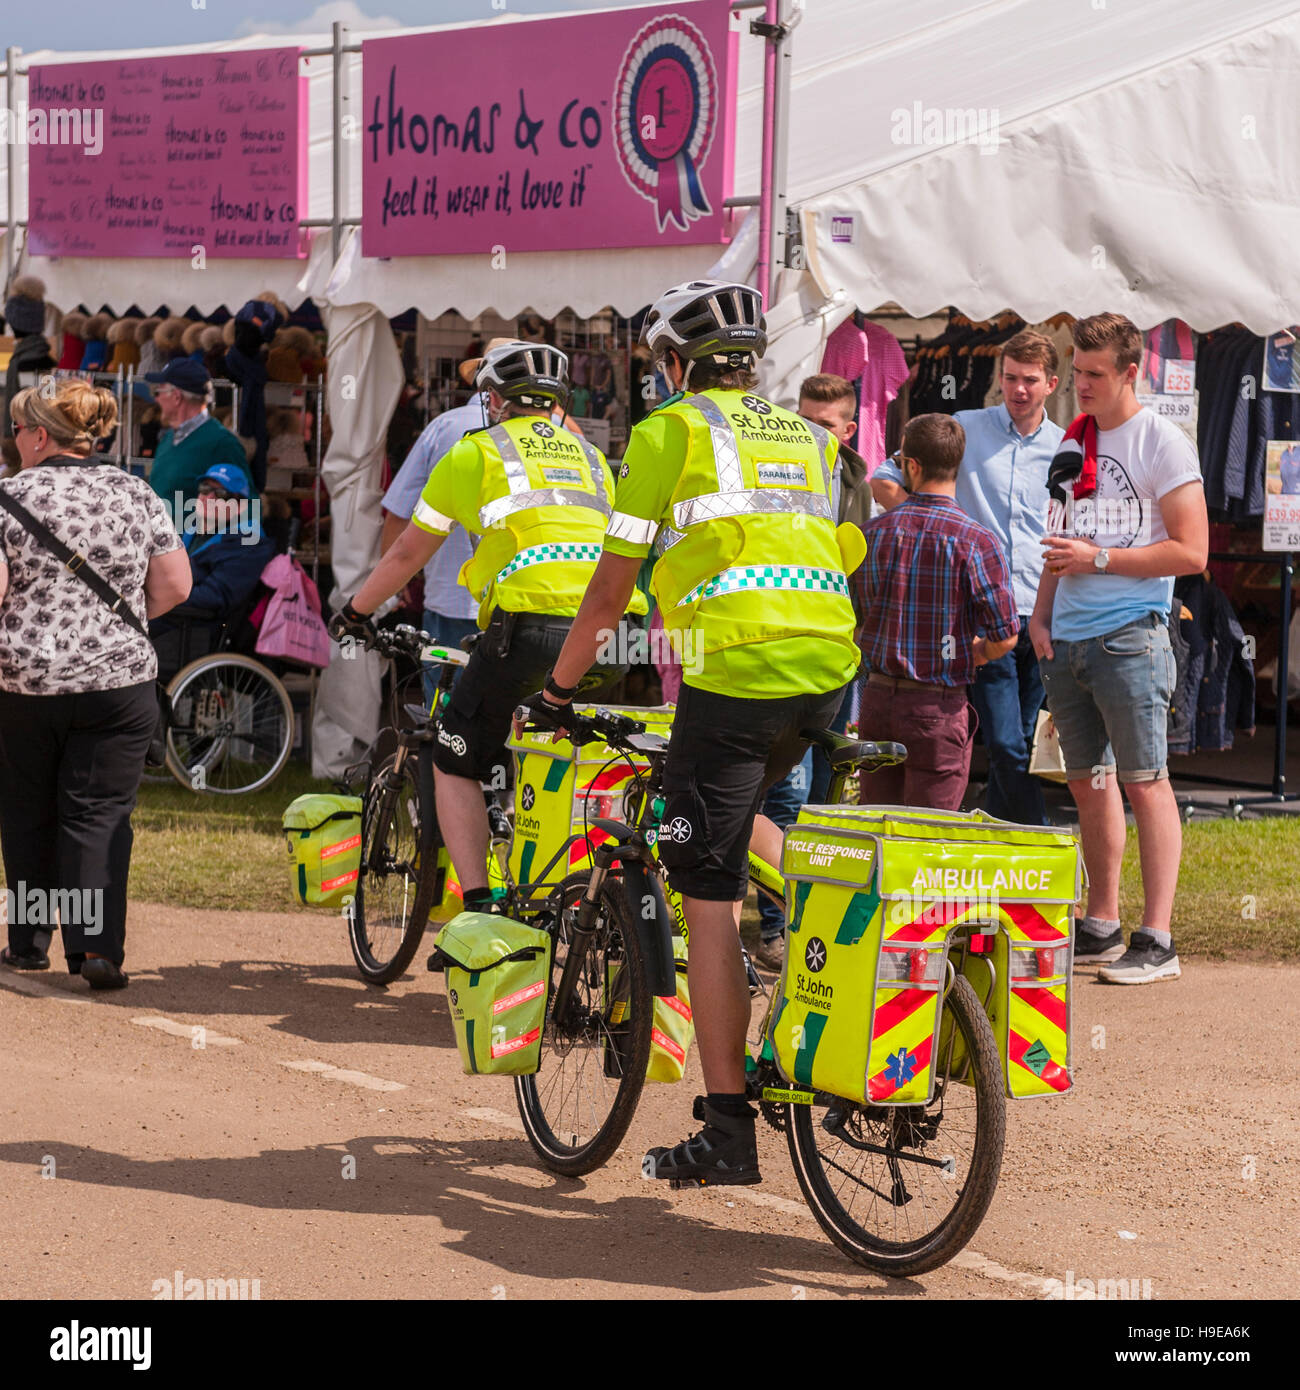 St John Ambulance à l'unité réponse du cycle du Royal Norfolk Show à la Norwich Norfolk Showground , , , Angleterre , Angleterre , Royaume-Uni Banque D'Images